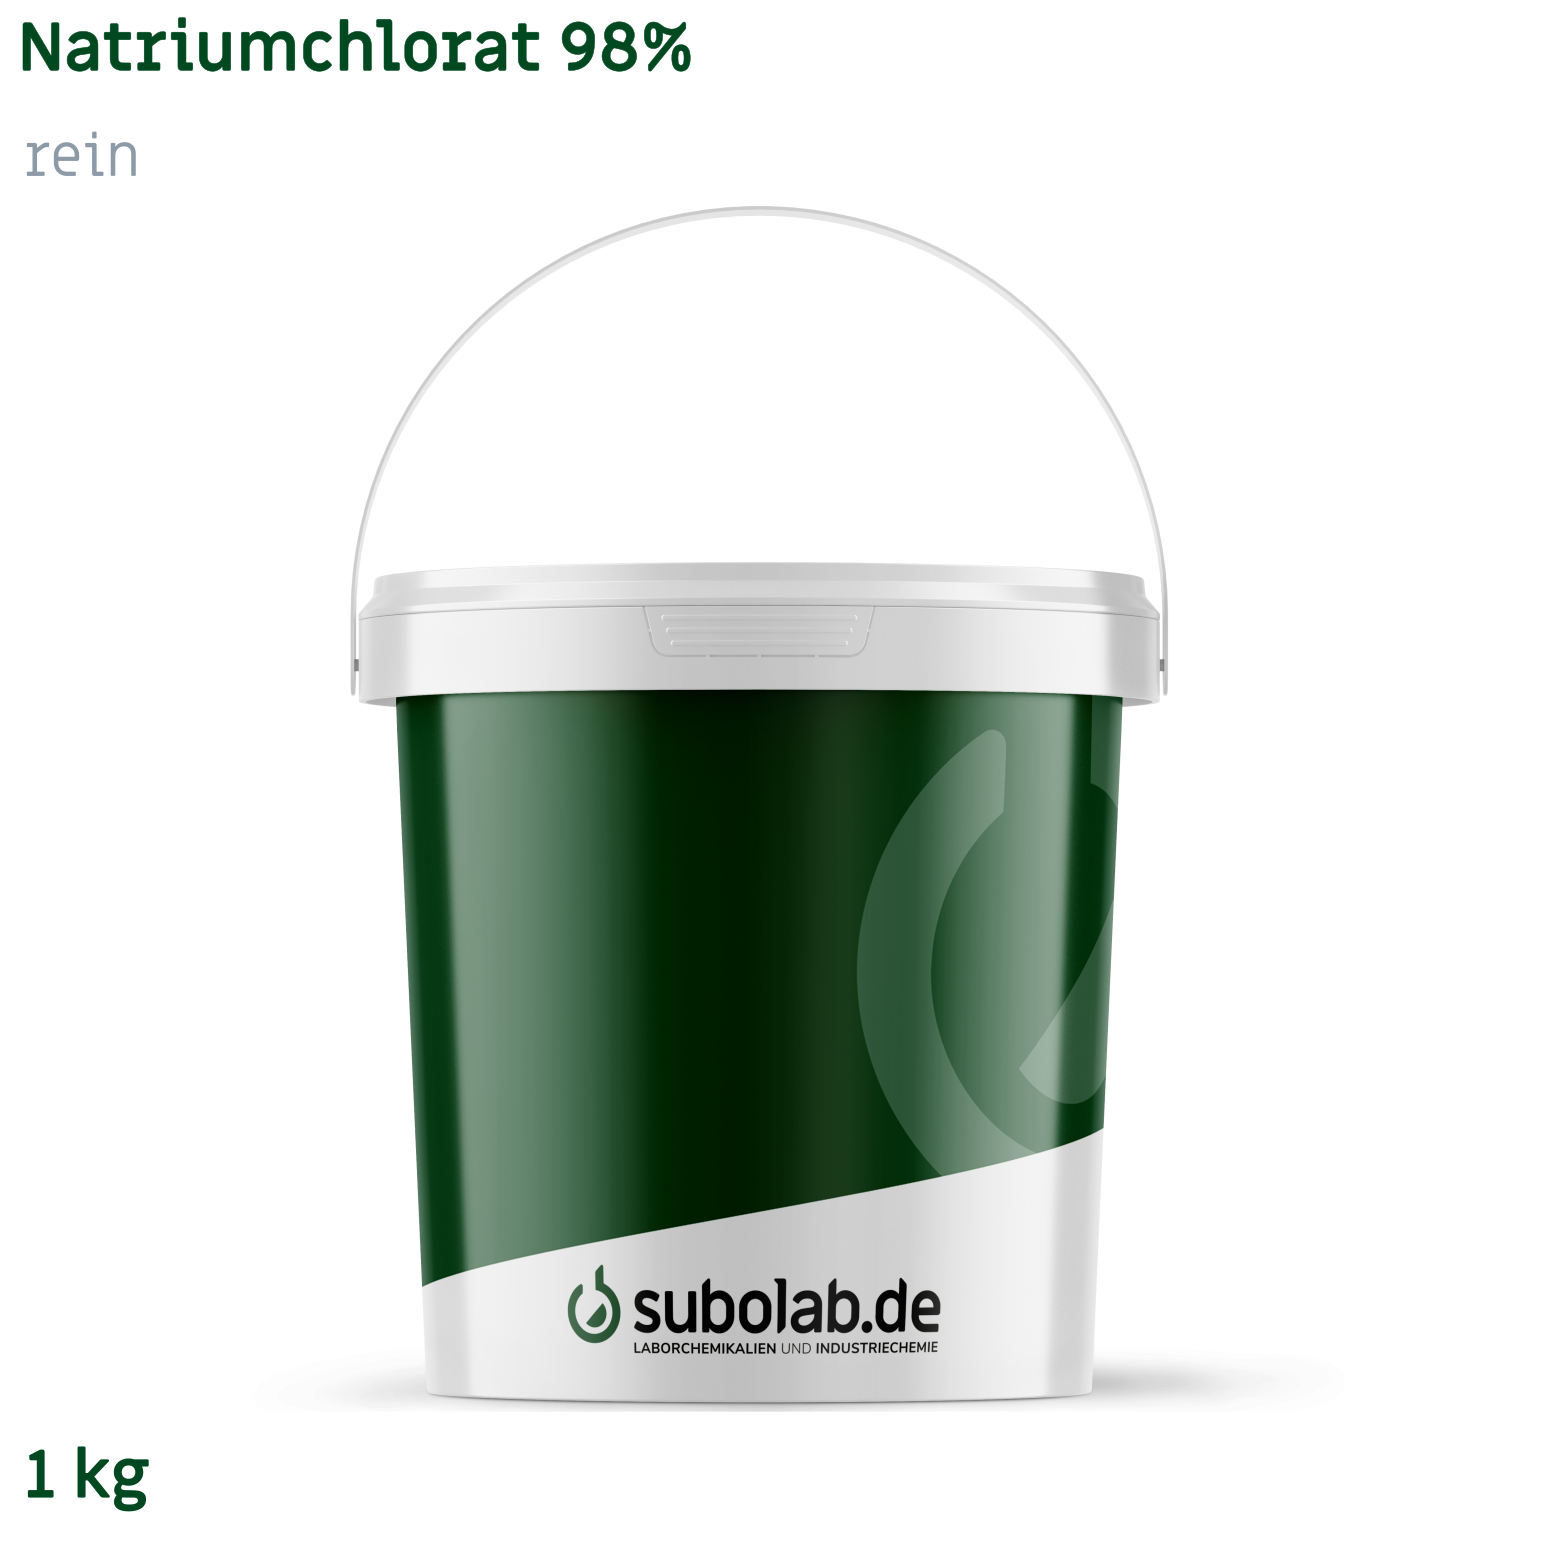 Bild von Natriumchlorat 98% rein (1 kg)